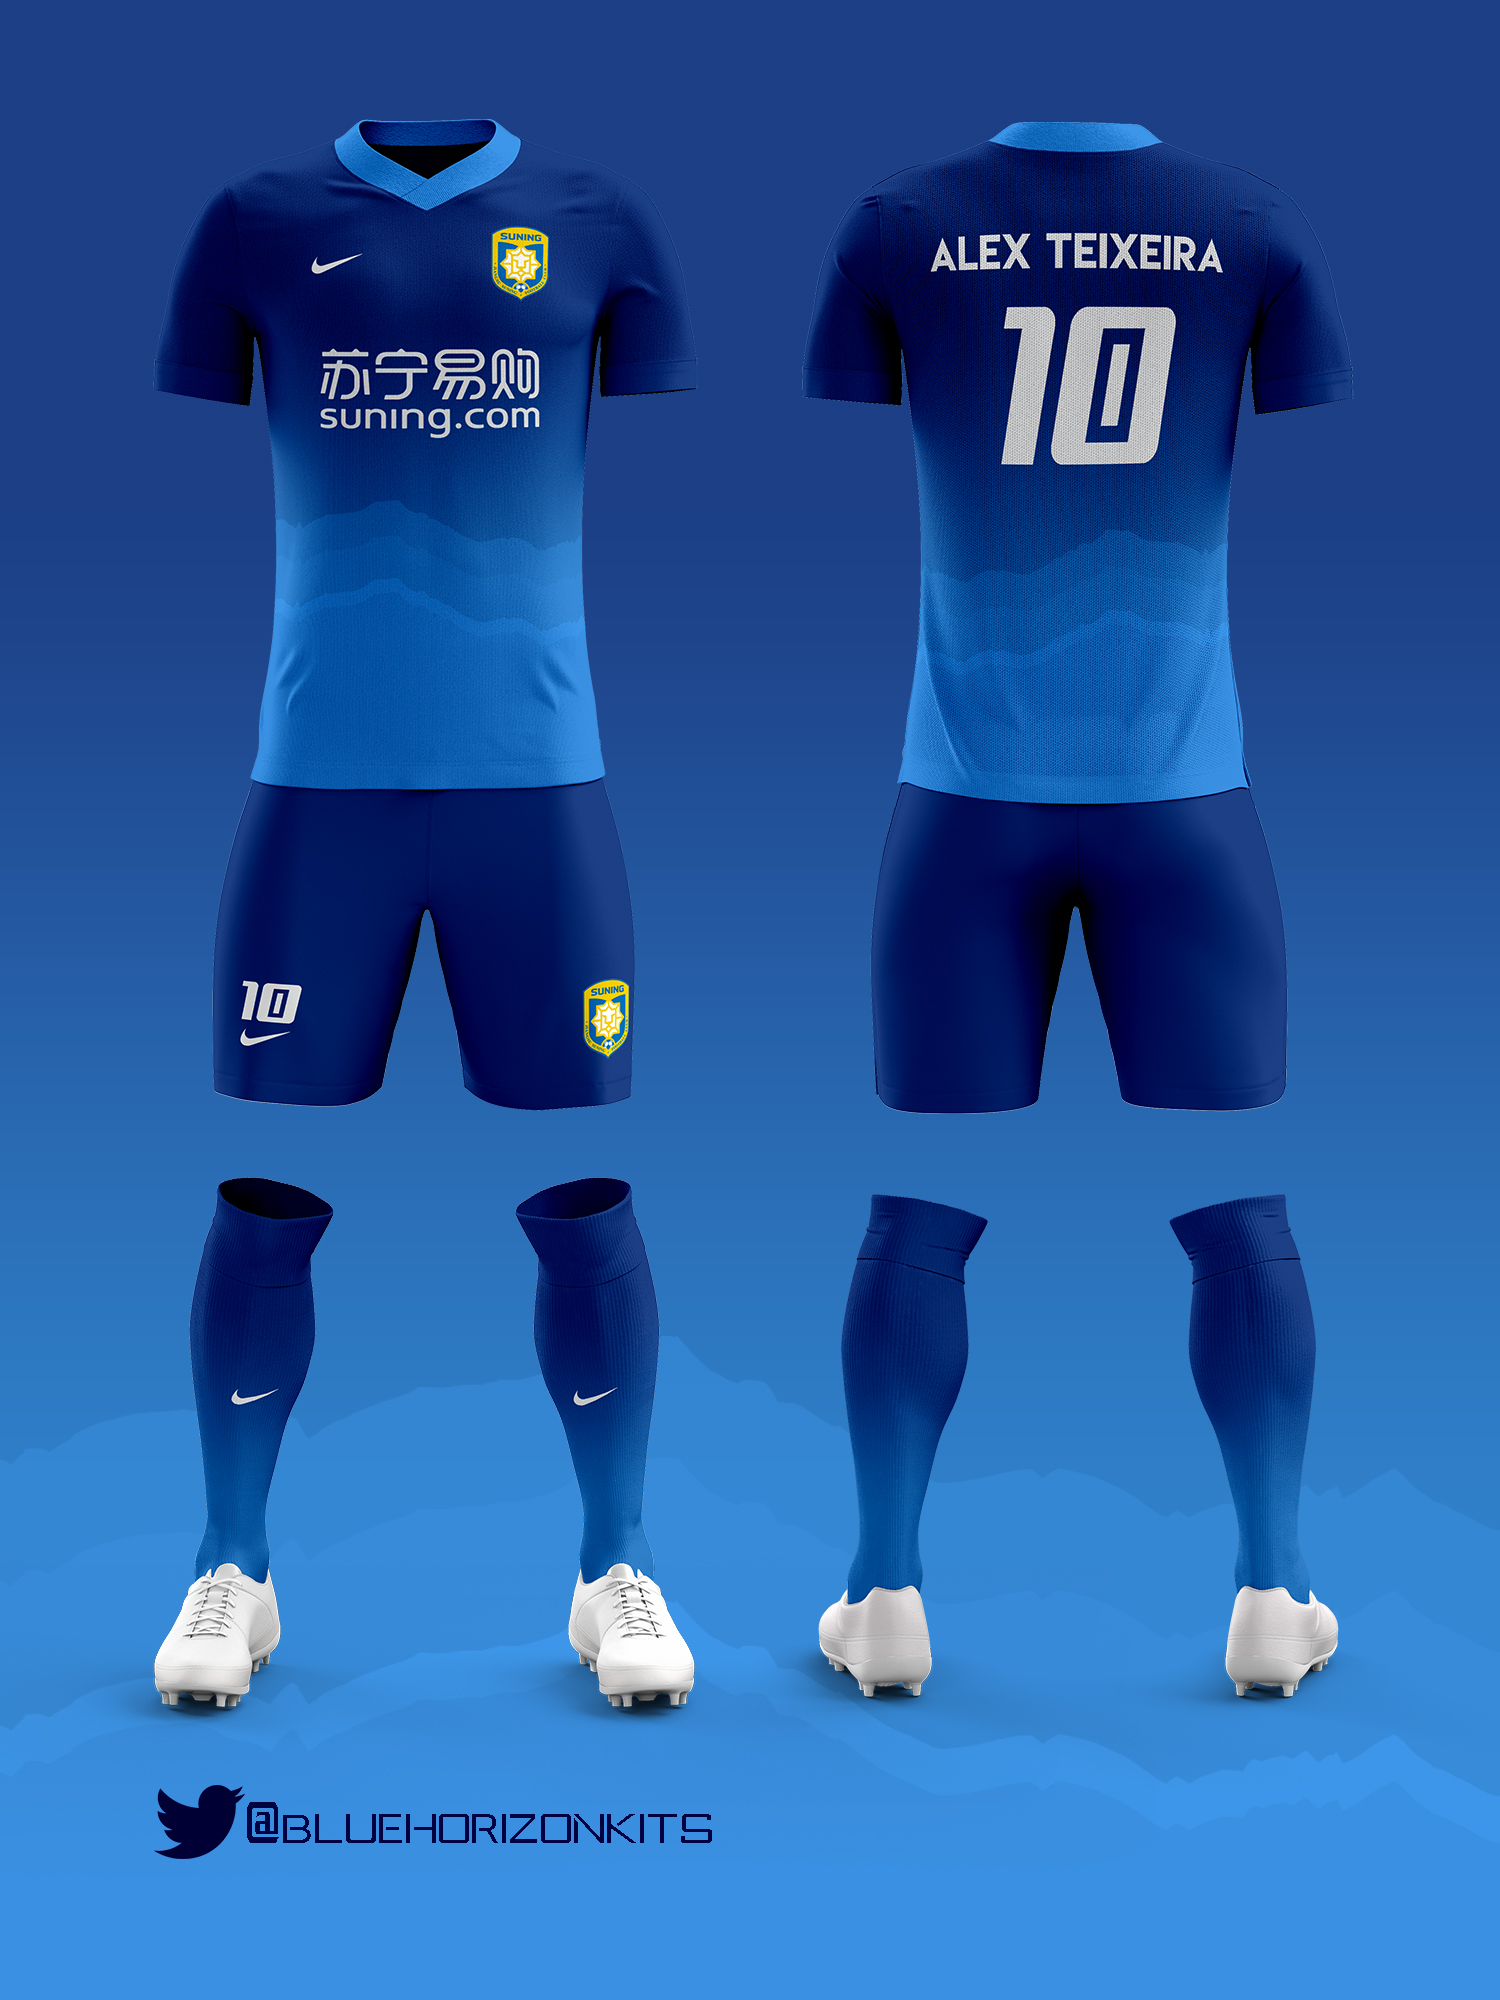 football jersey design 2017